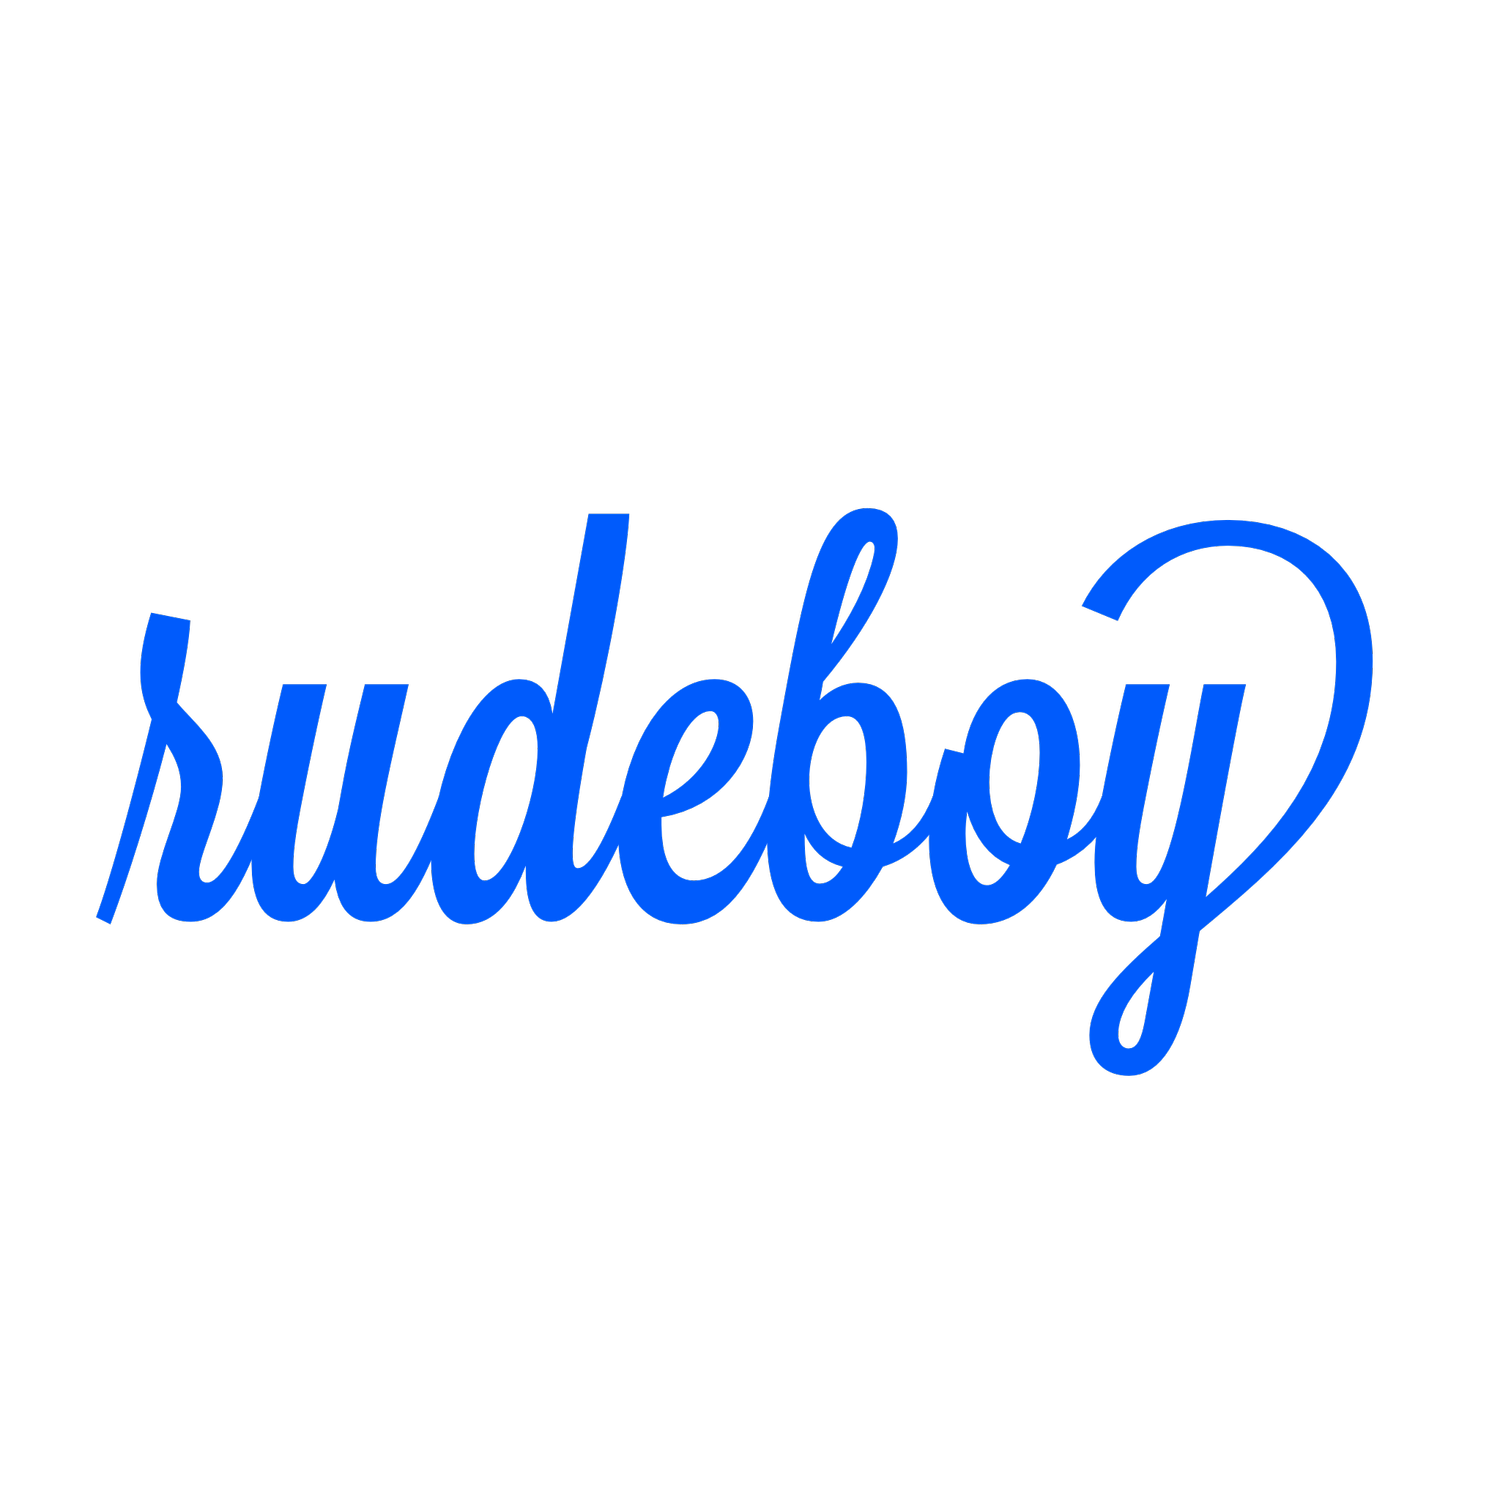 rudeboy